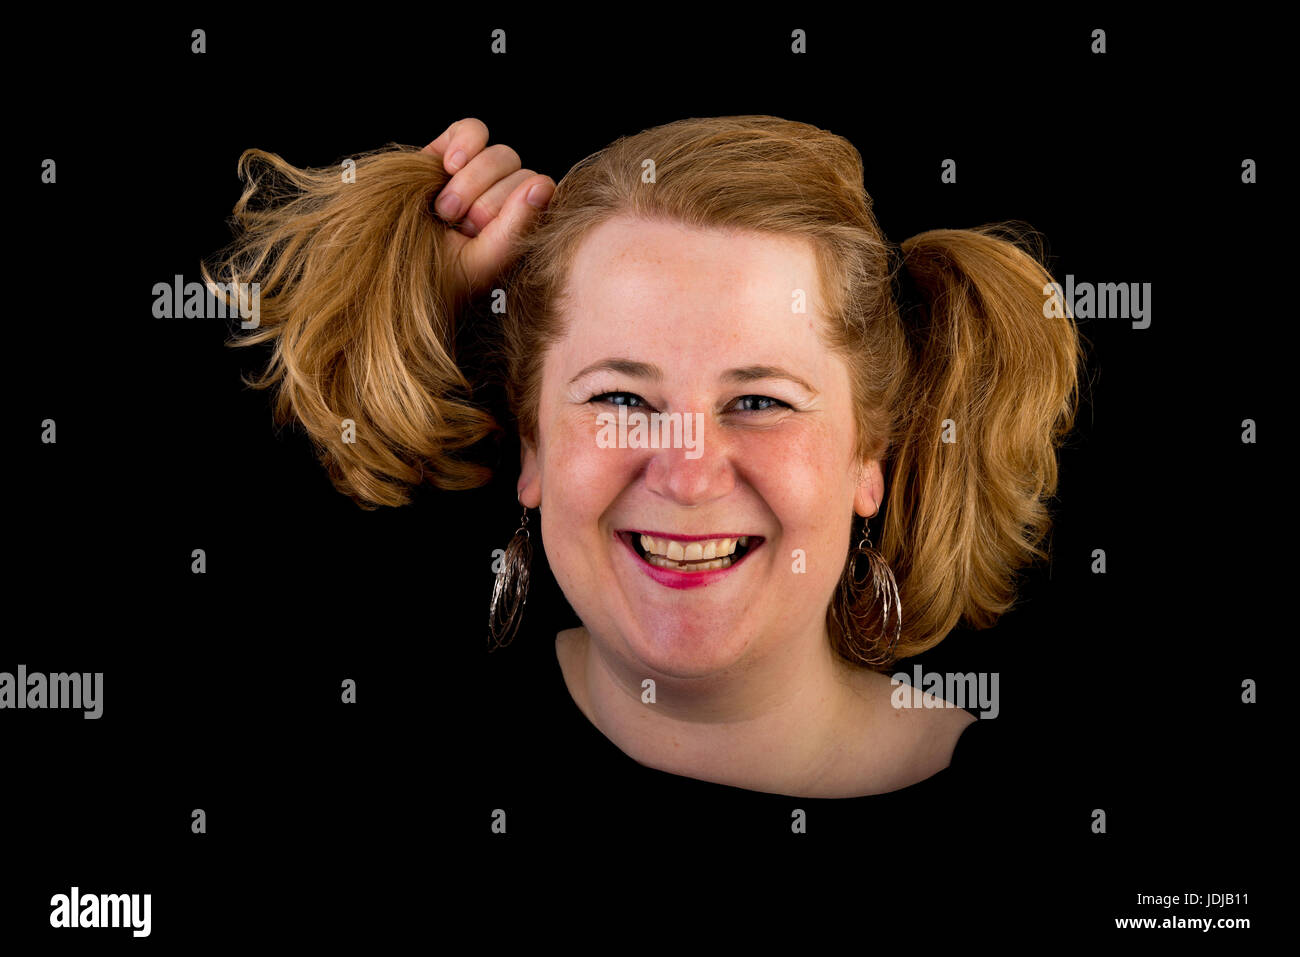 Attraktive rote behaarte lite Übergewicht Europäische Reife Frau mit  lustigen Frisur - ziehen ihr Haar Studio gedreht auf dunklem Hintergrund  Stockfotografie - Alamy